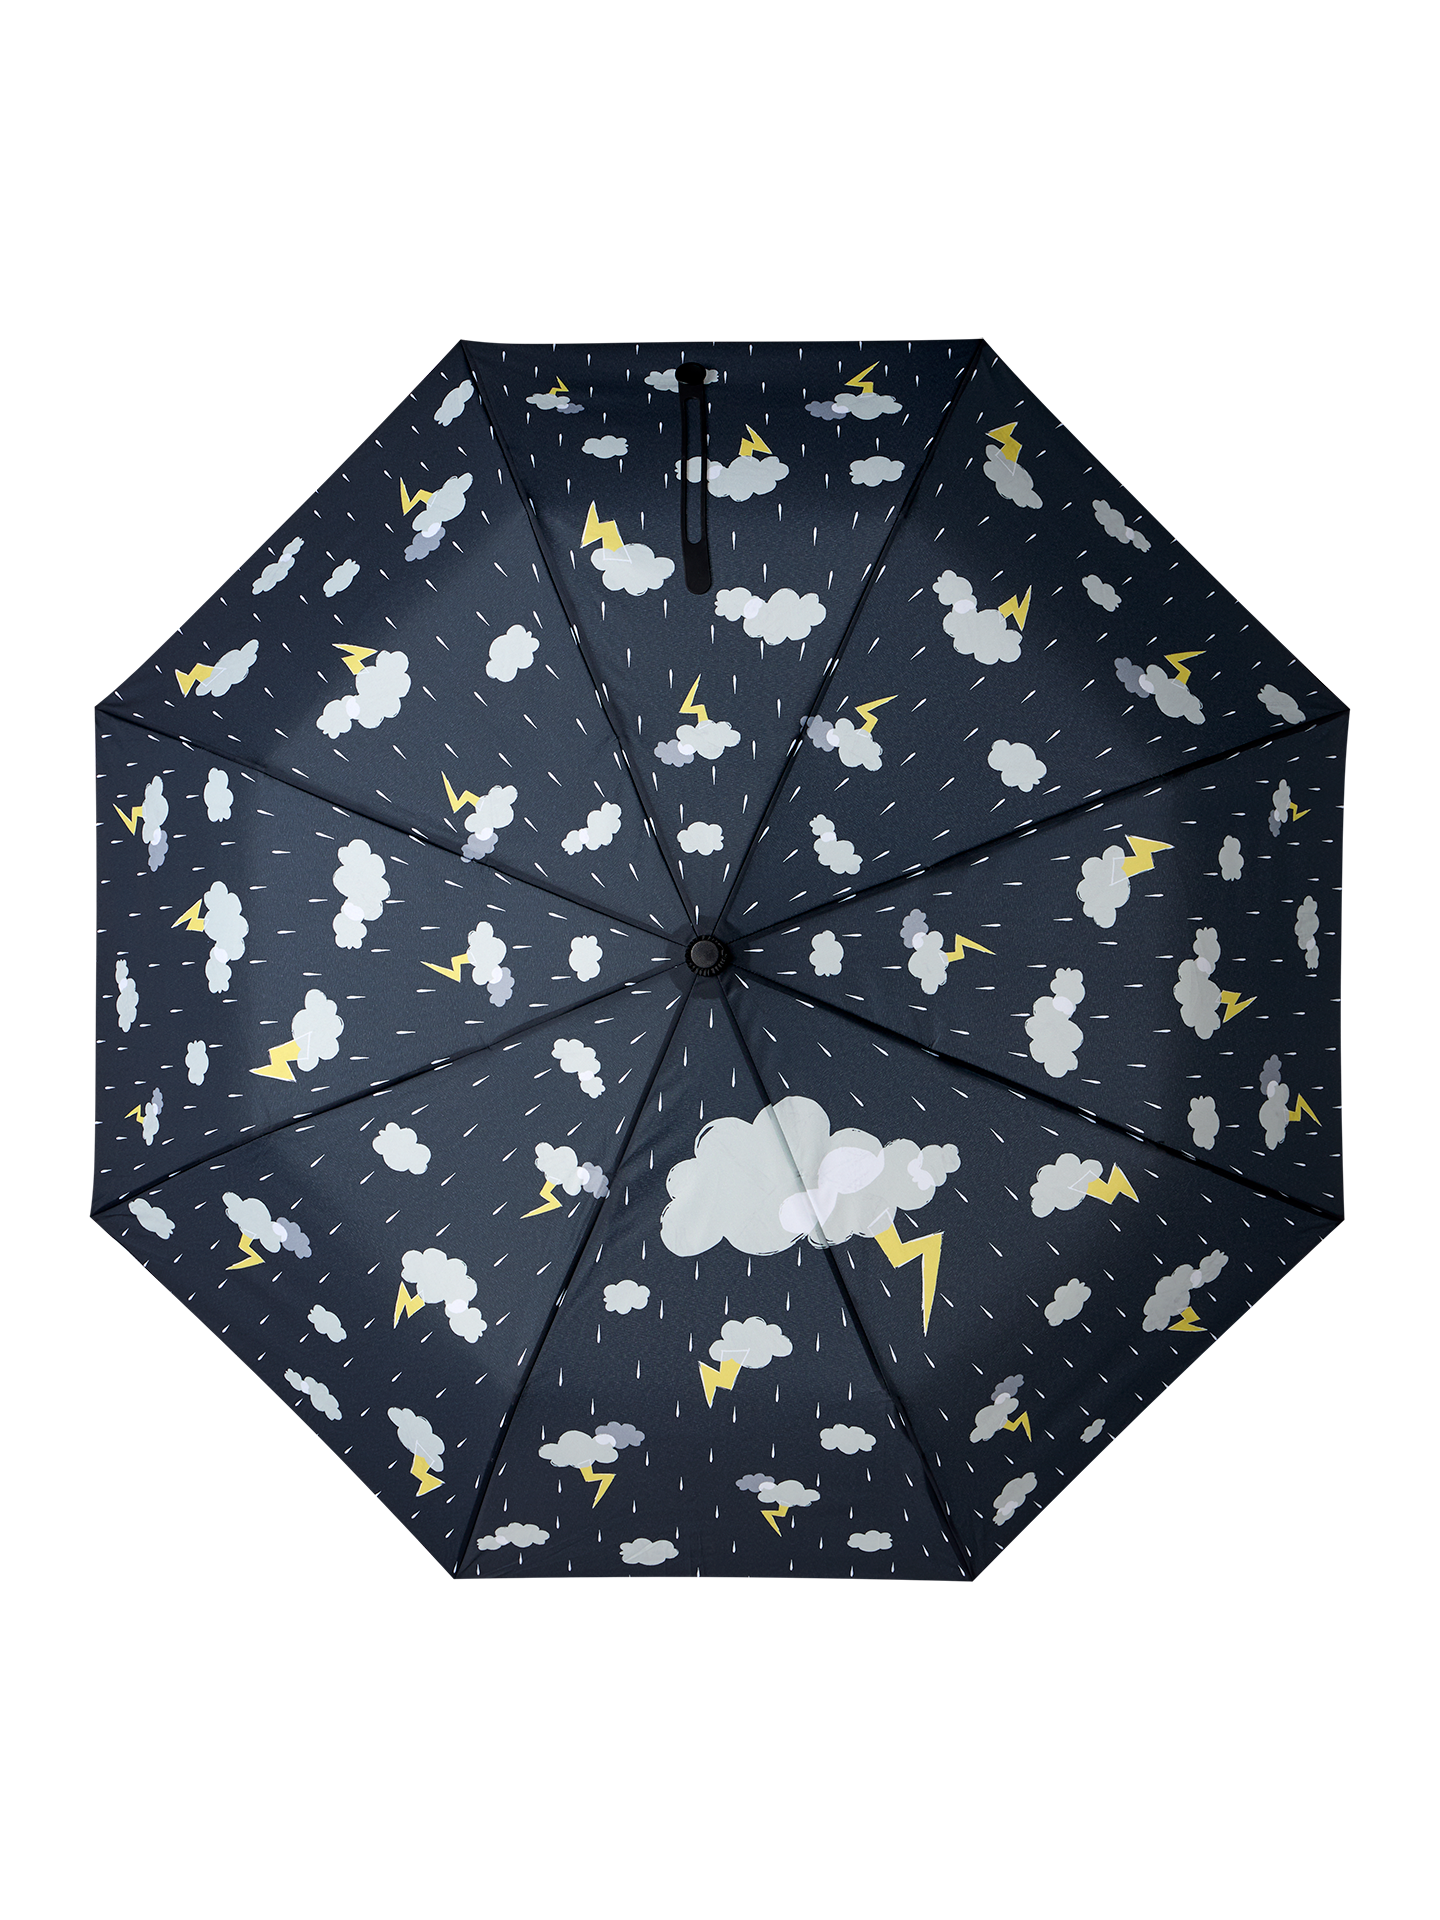 Umbrella Storm